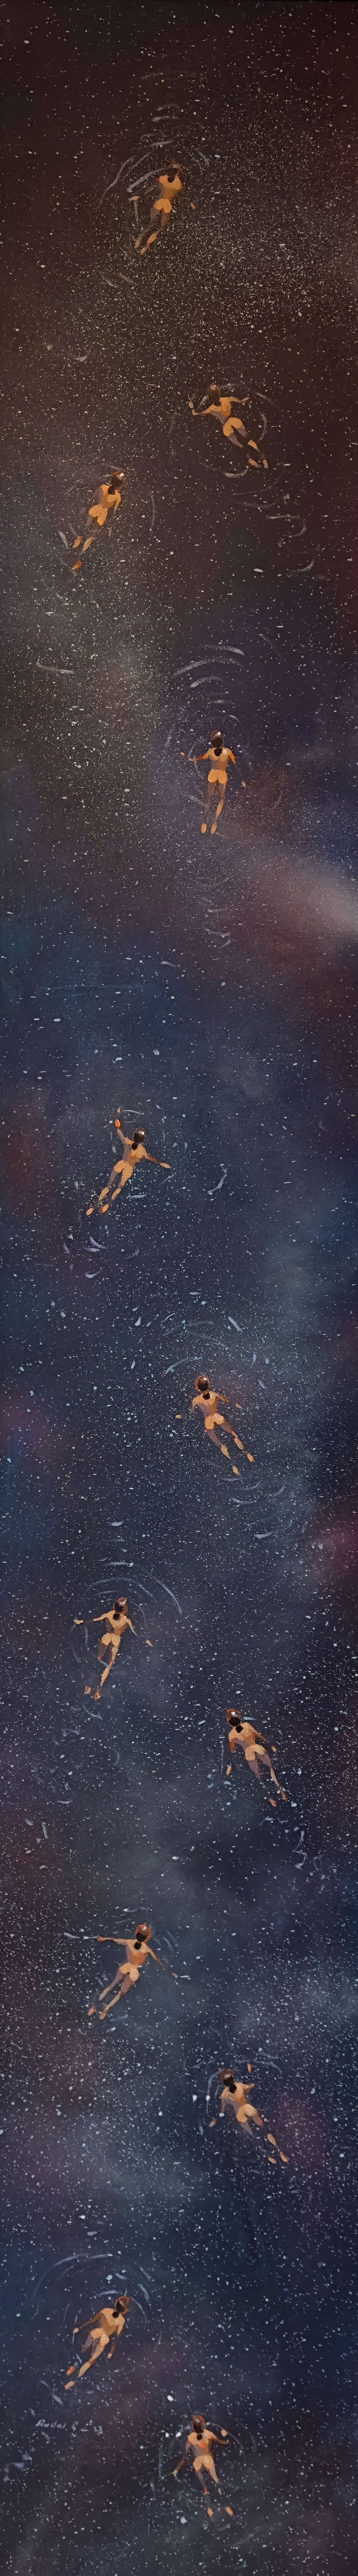 Nadando en el Espacio by Pascual Rudas